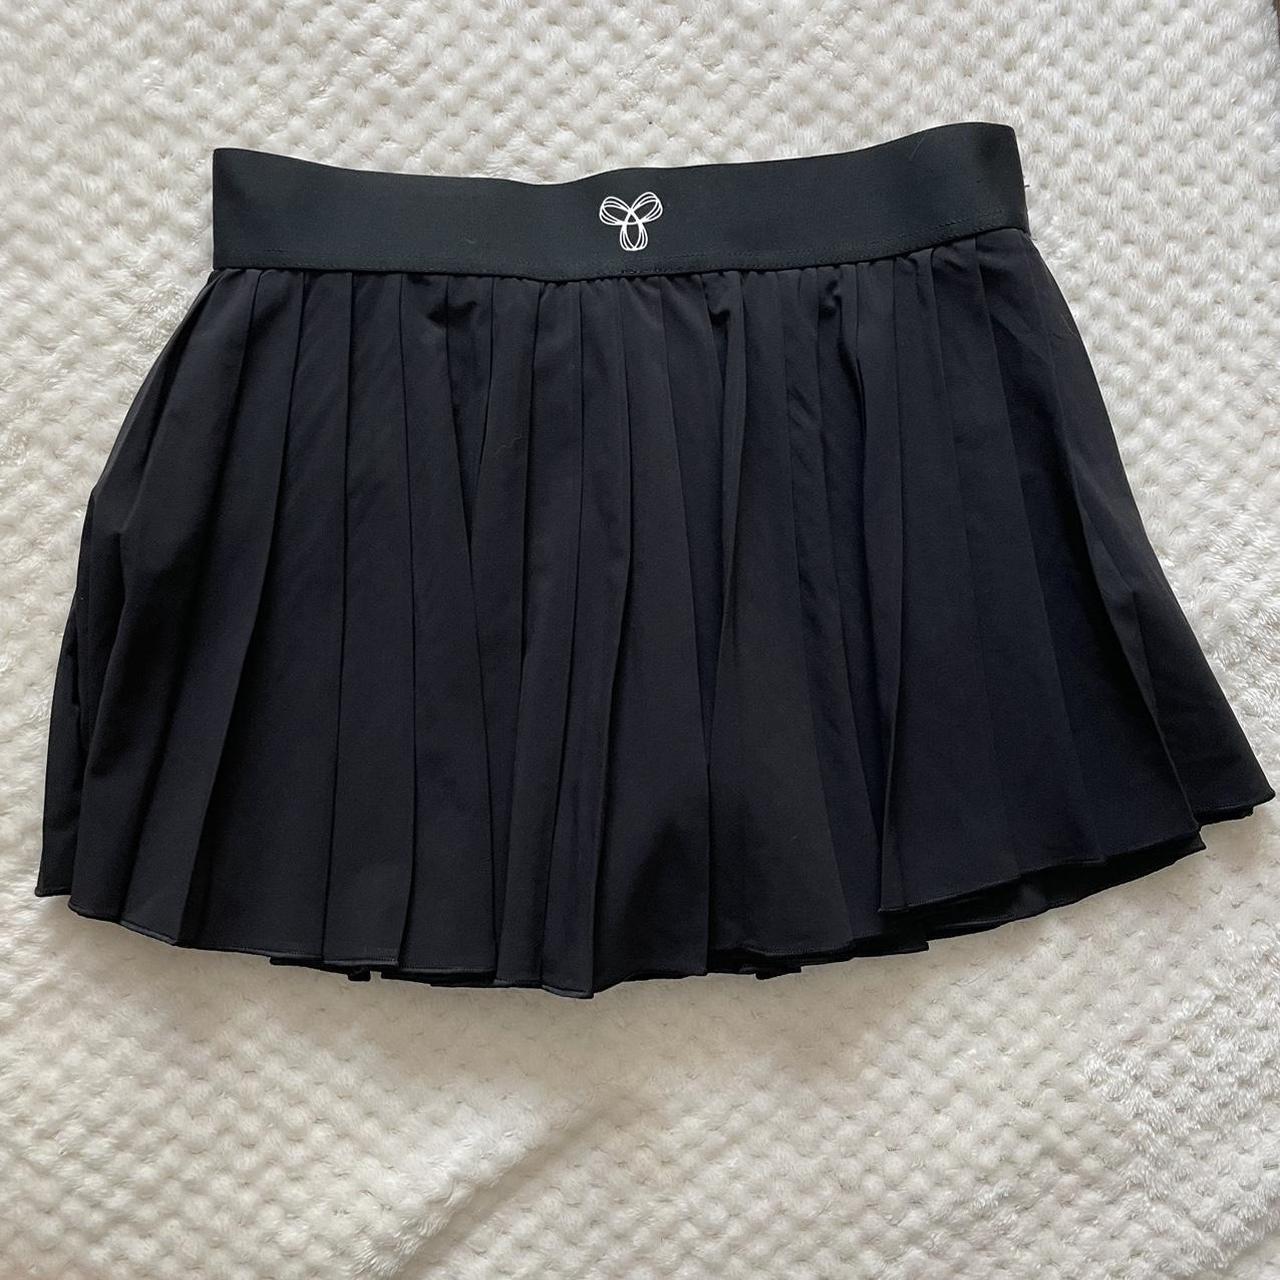 aritzia tna tennis skirt -built in shorts -worn... - Depop